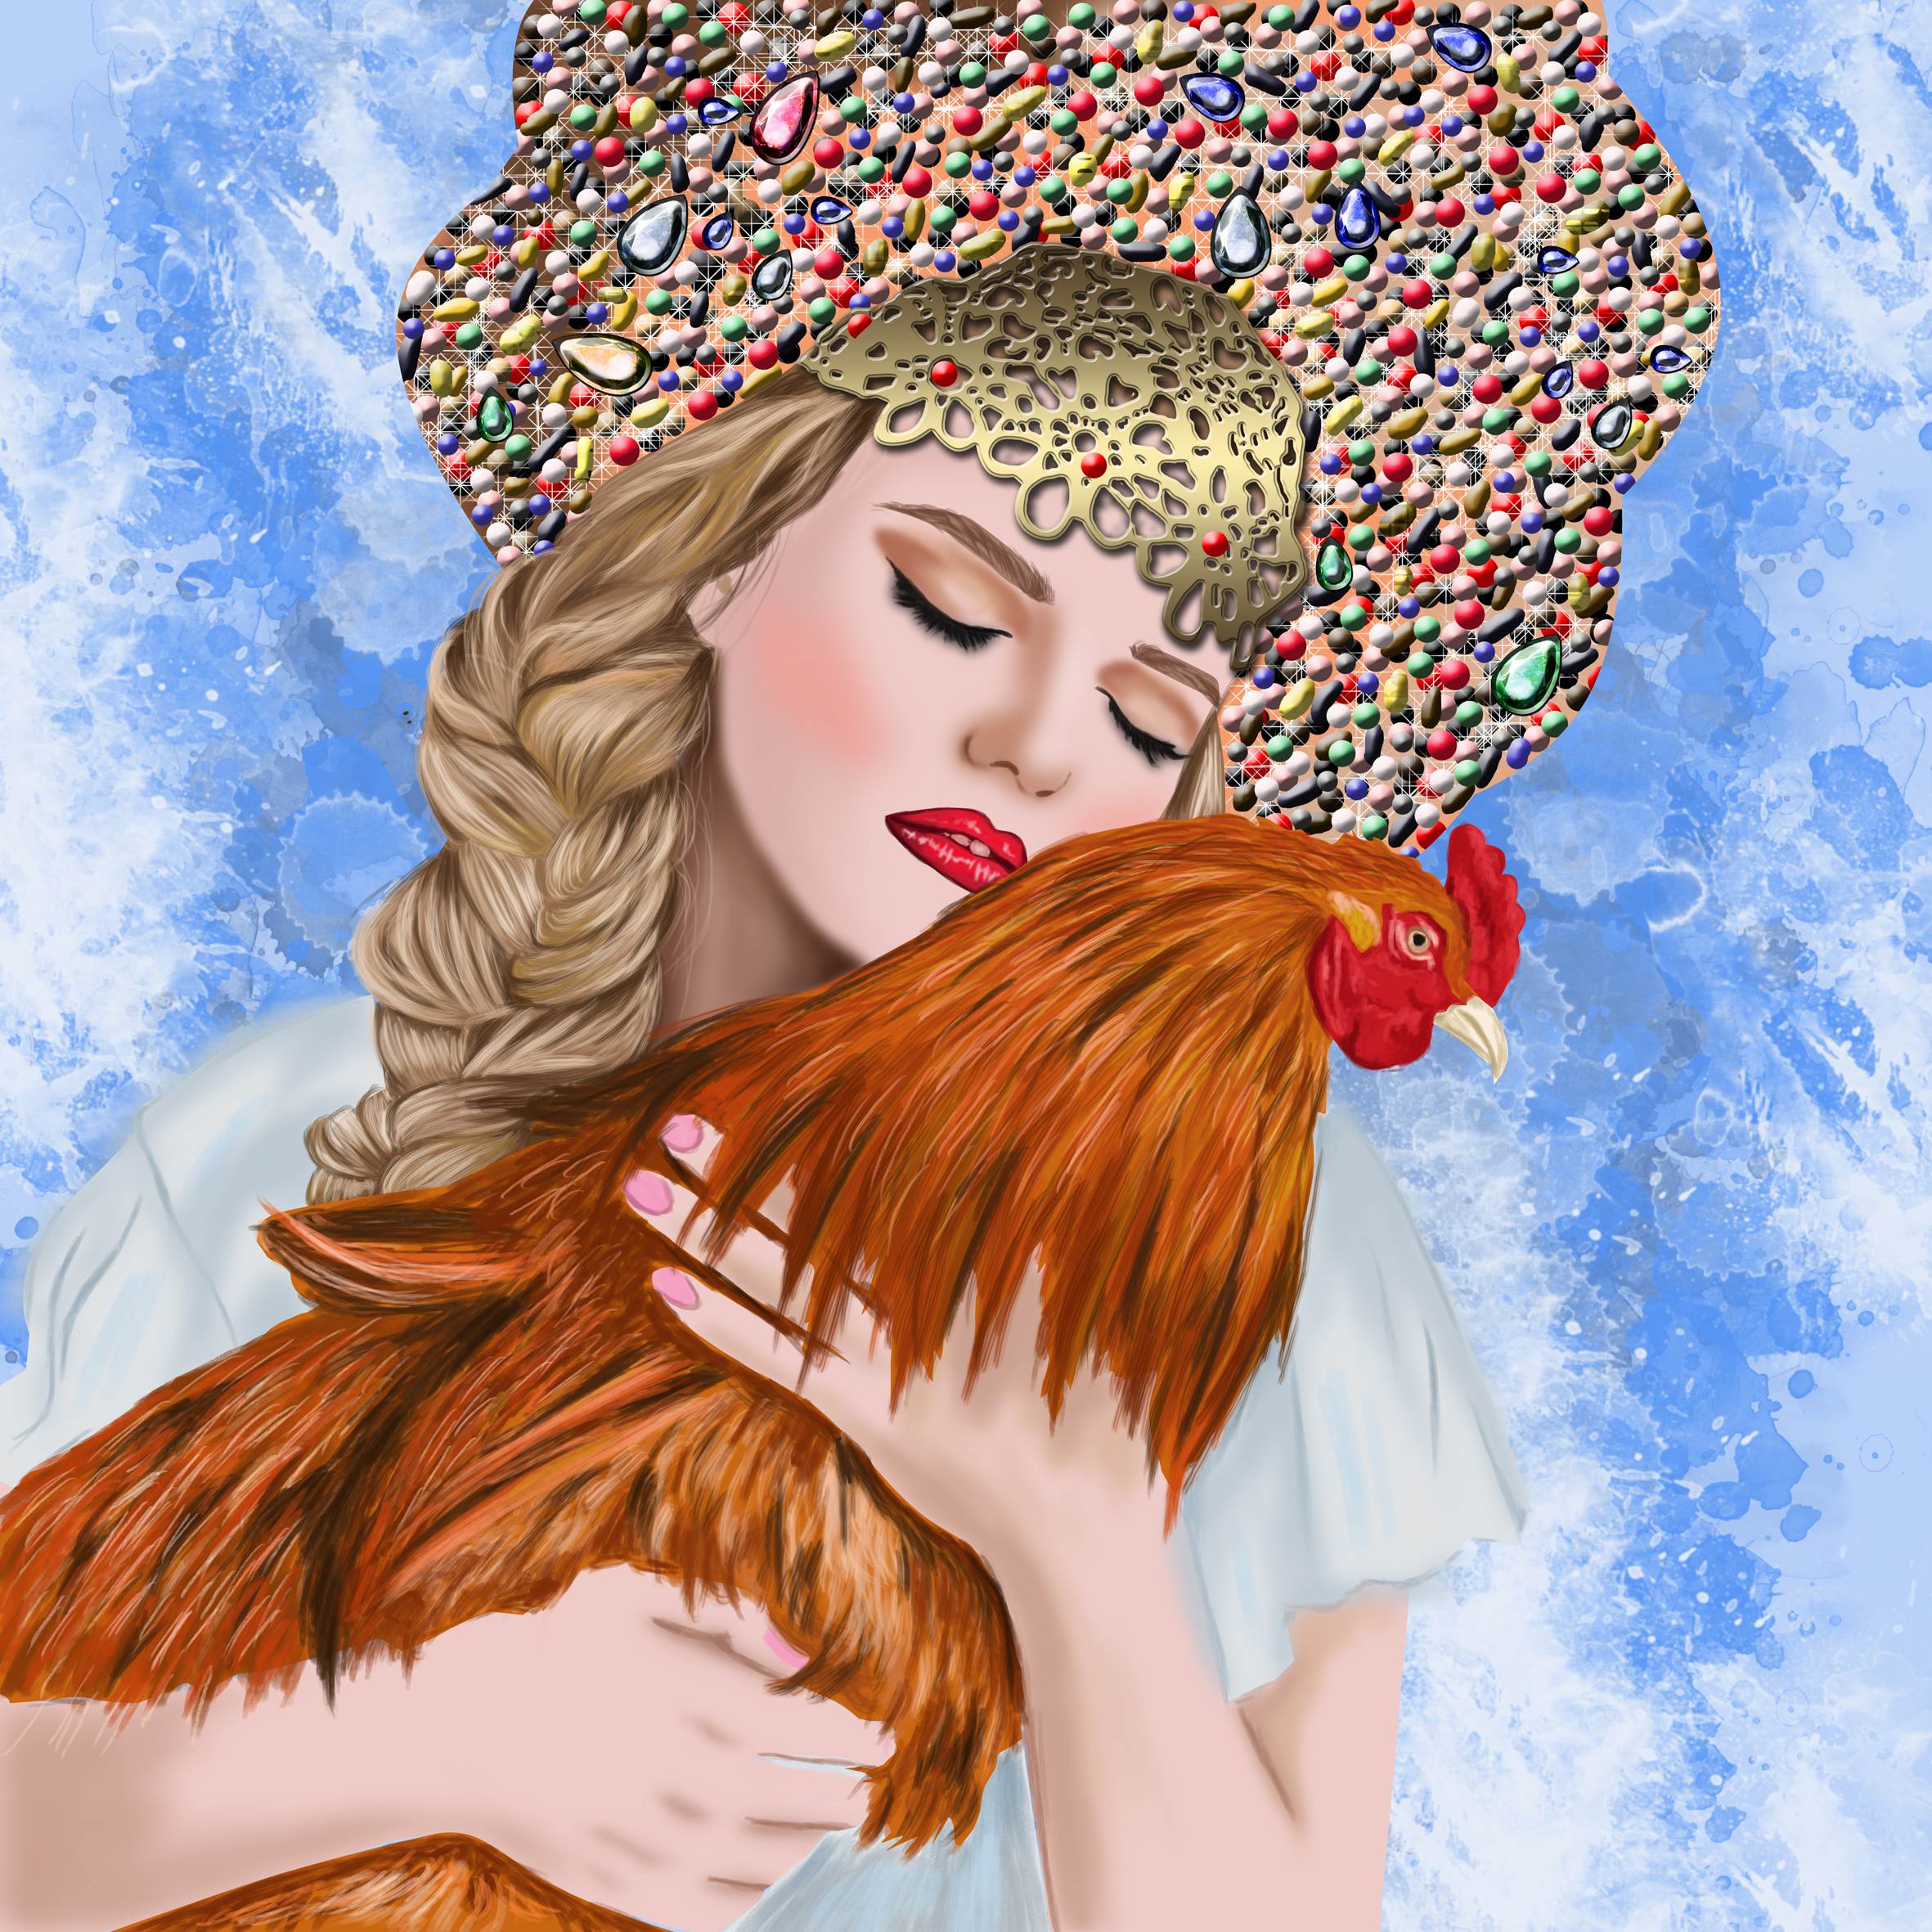 Тетка в кокошнике. Портрет девушки в кокошнике рисунок. Снегурочка в кокошнике с распущенными волосами картина. Девушка в кокошнике картинка карандашом. Девушка в кокошнике с караваем рисунок.